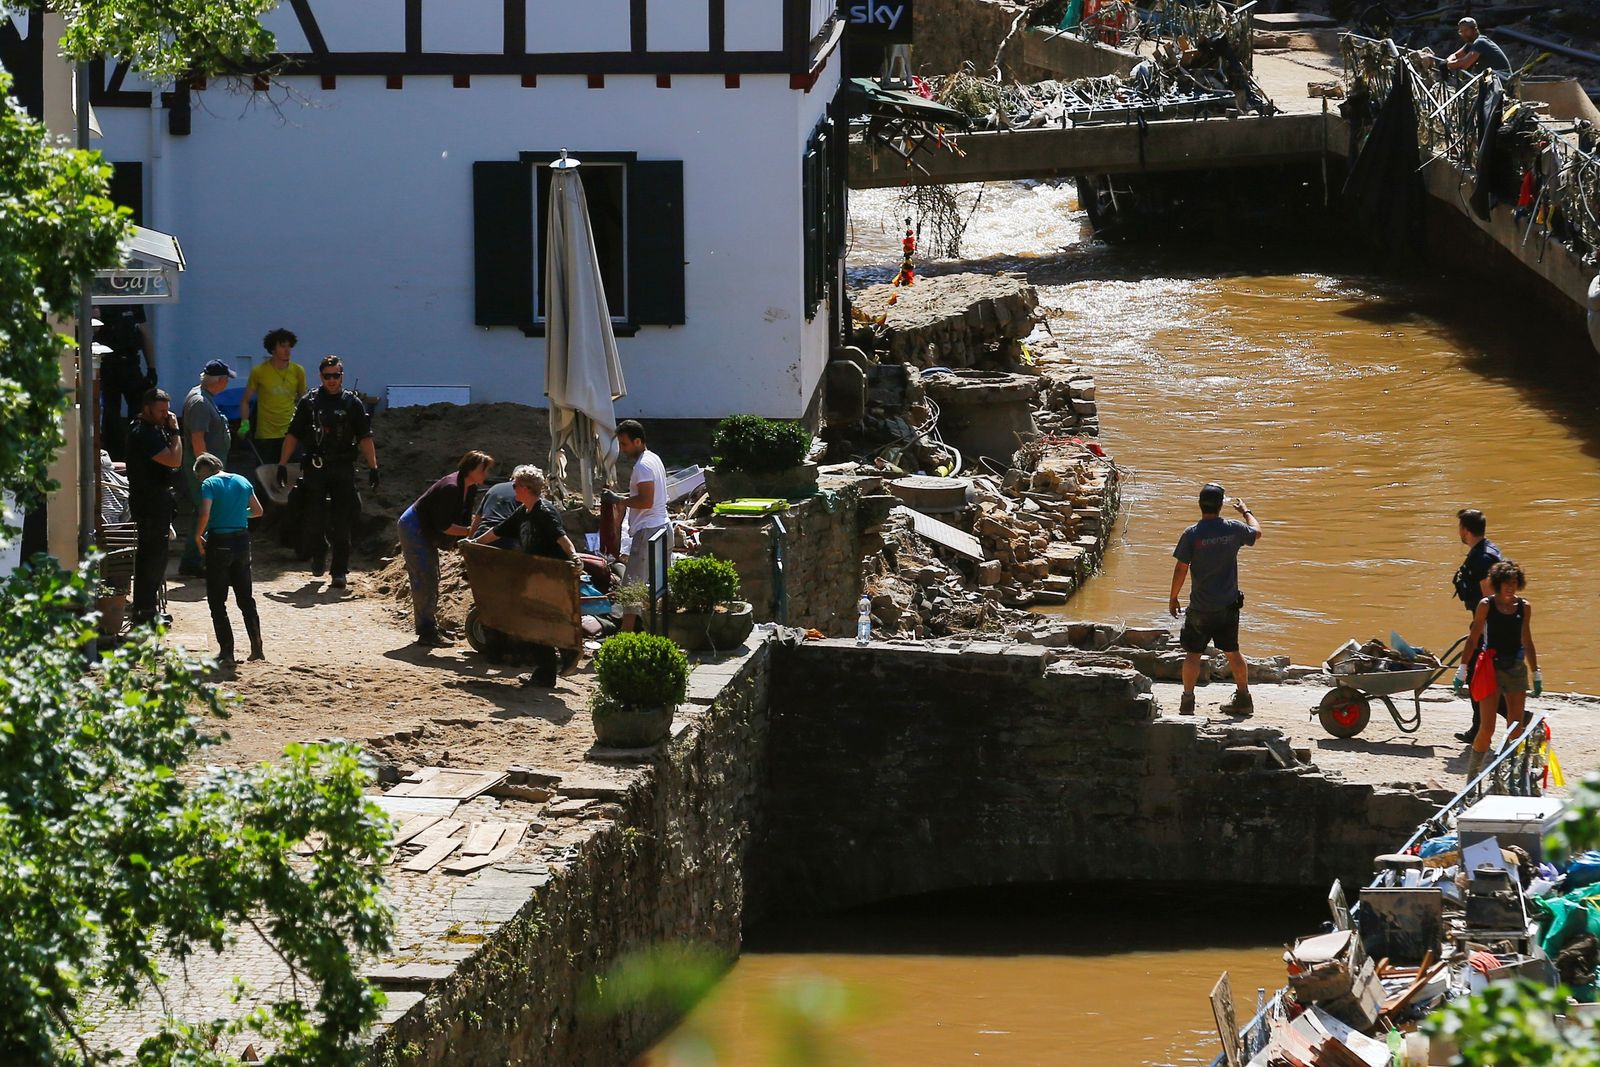 دمار لحق بجسور في المناطق التي ضربتها الفيضانات وأدت لمصرع العشرات. - REUTERS